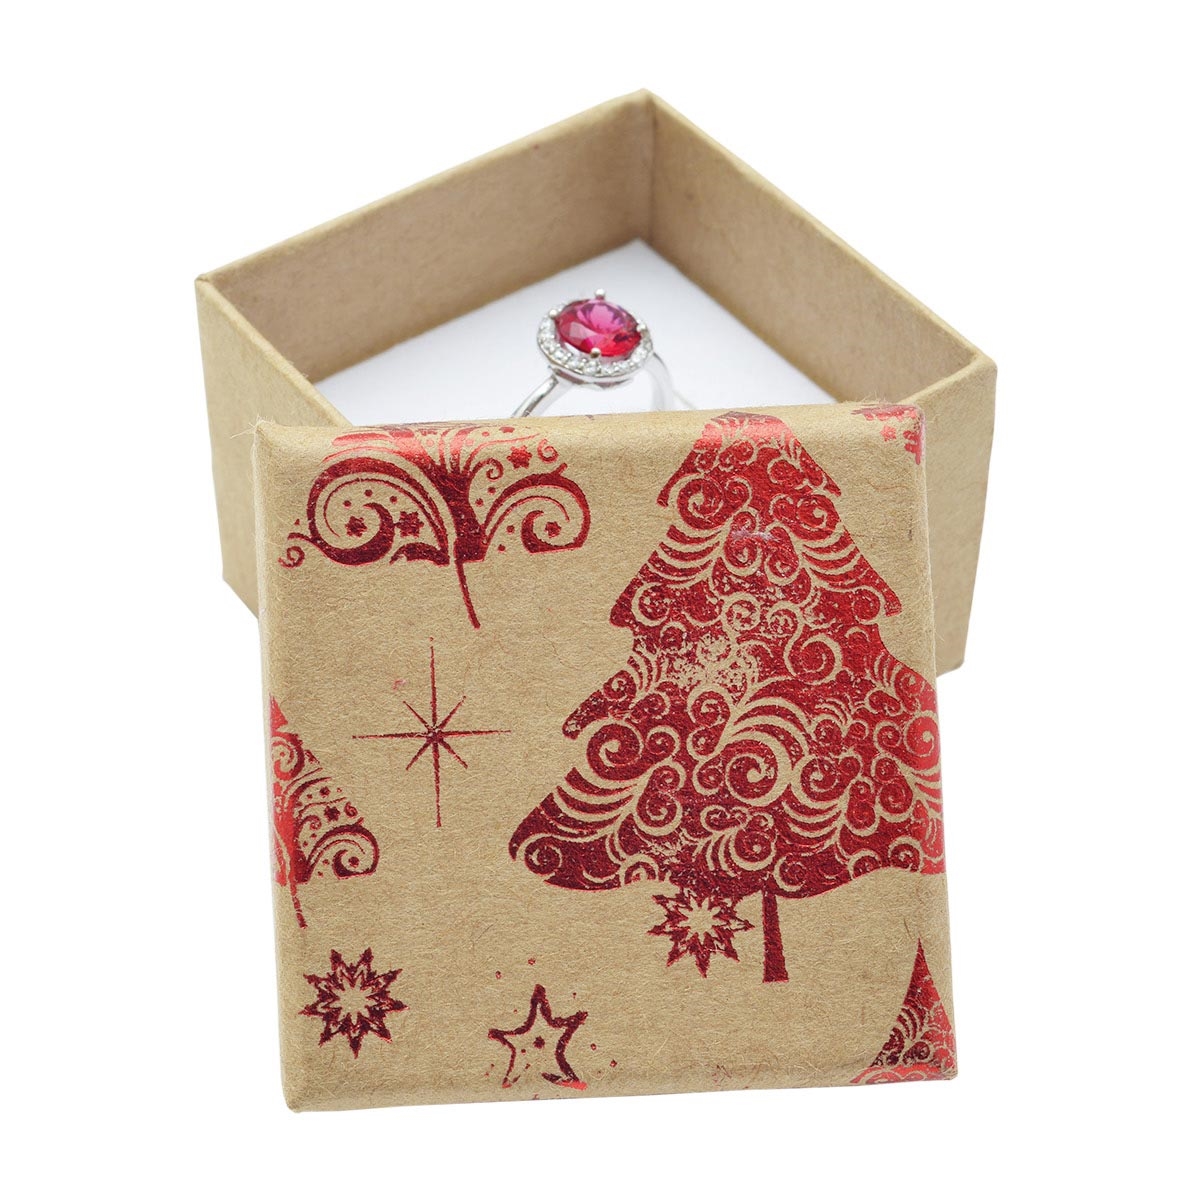 Vianočná darčeková krabička na prsteň / náušnice - červený motív